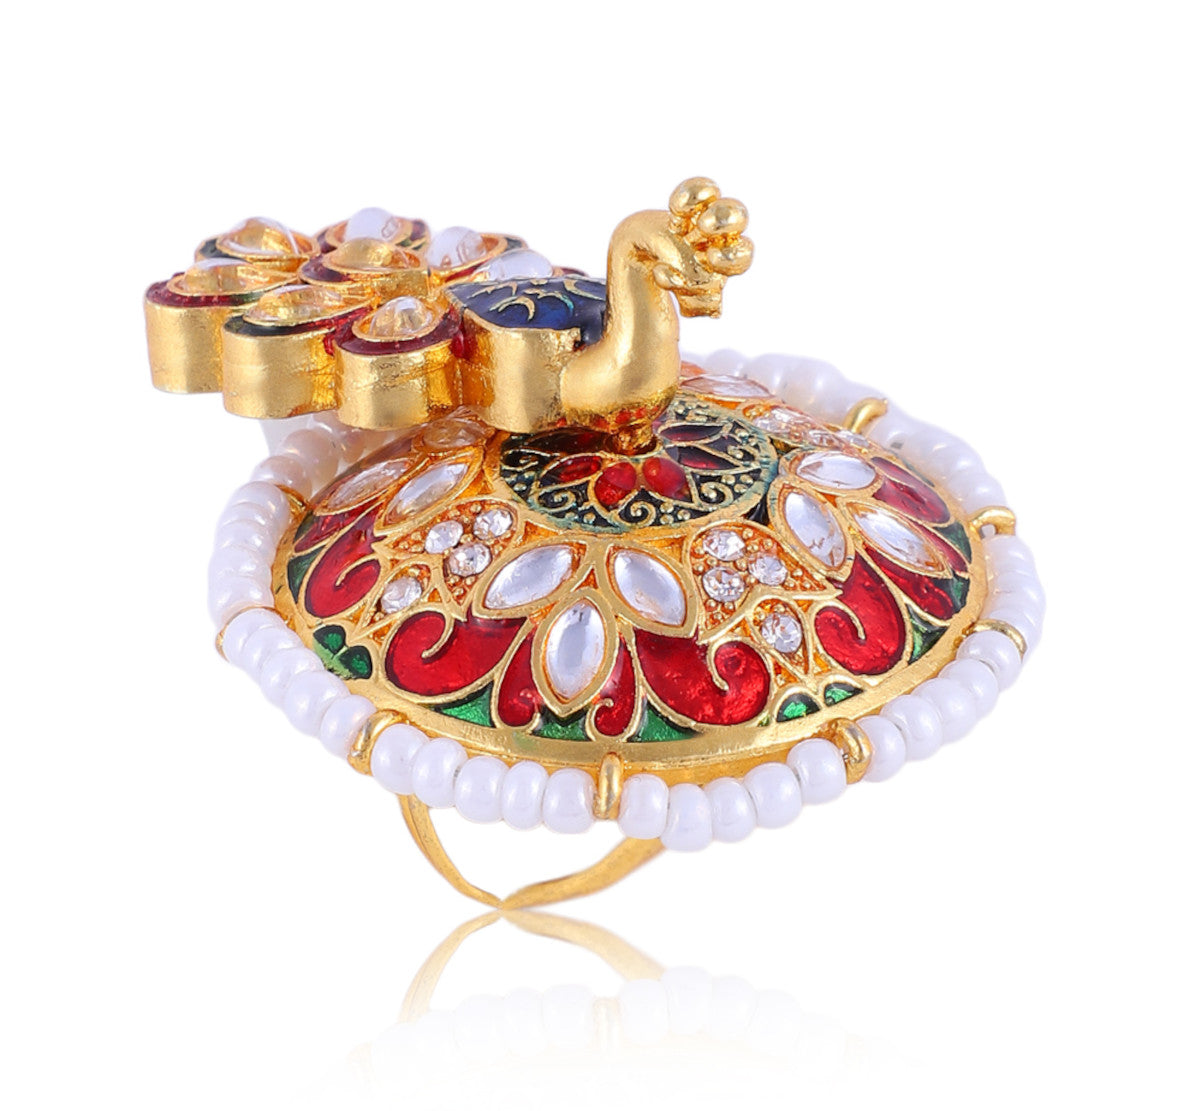 Peacock Ring for Women | Buy This Peacock Ring Online from Mekkna